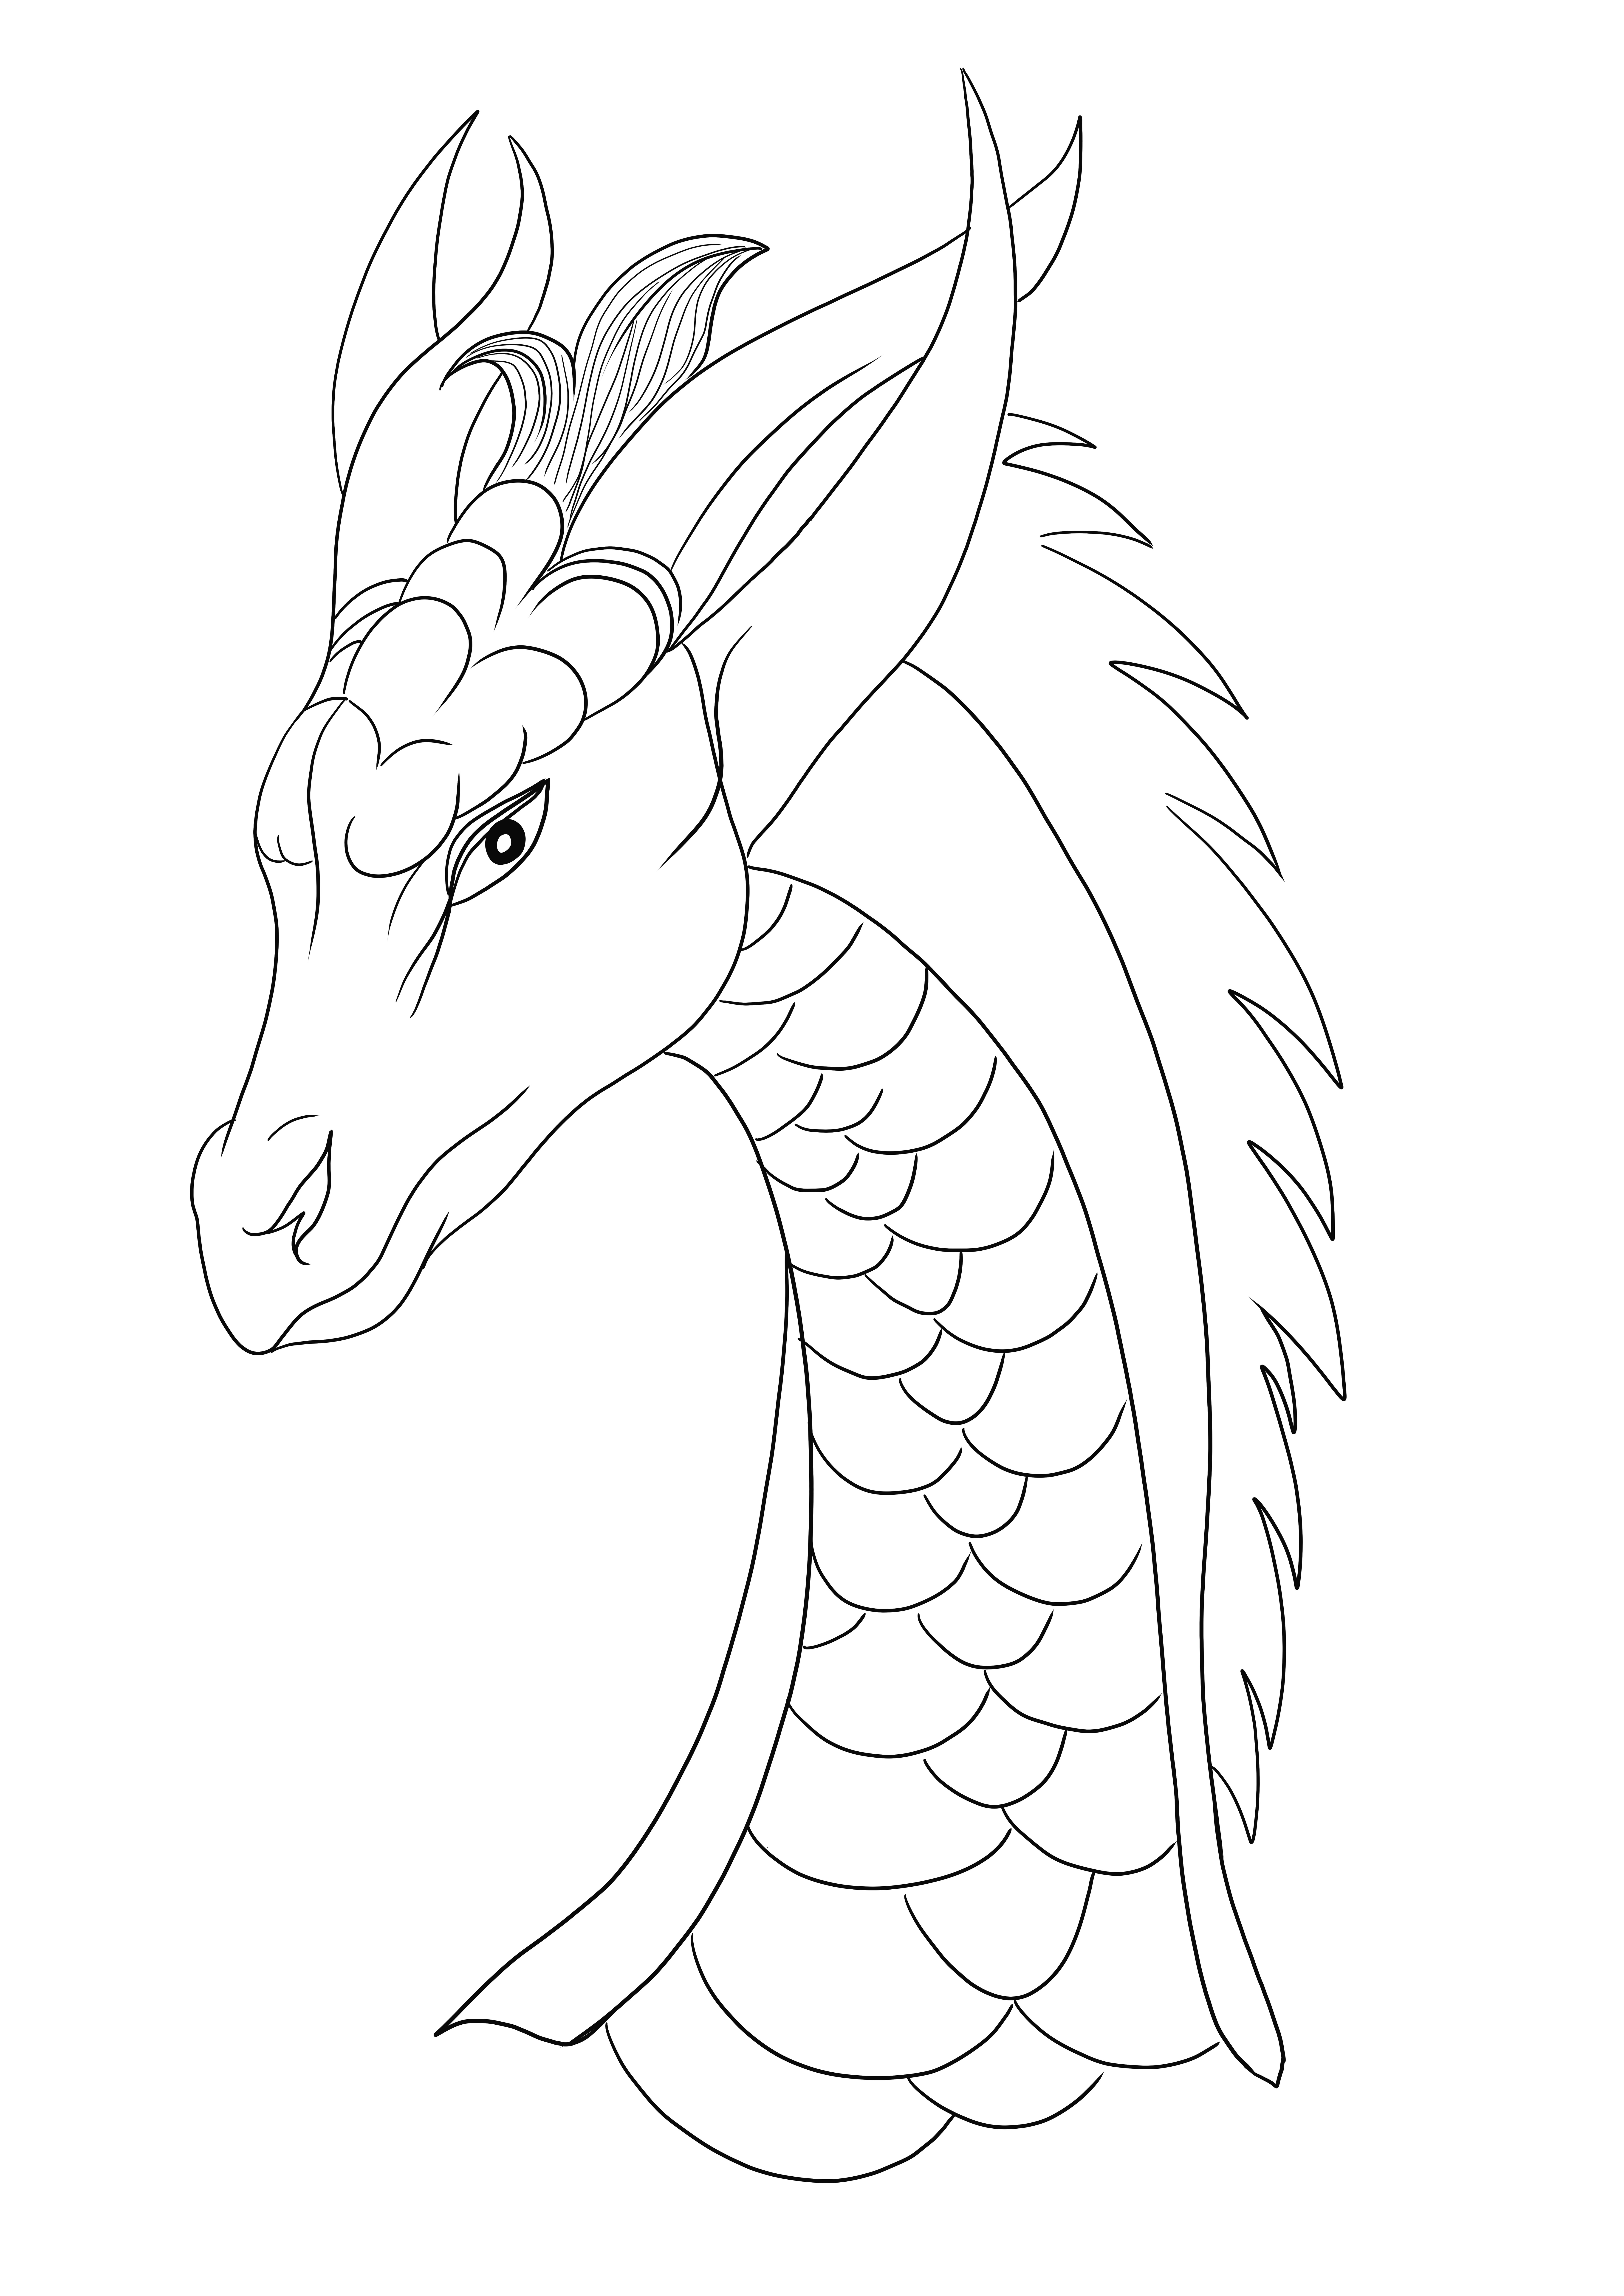 Un joli dragon femelle a l'air anxieux car il est libre d'être coloré et imprimé